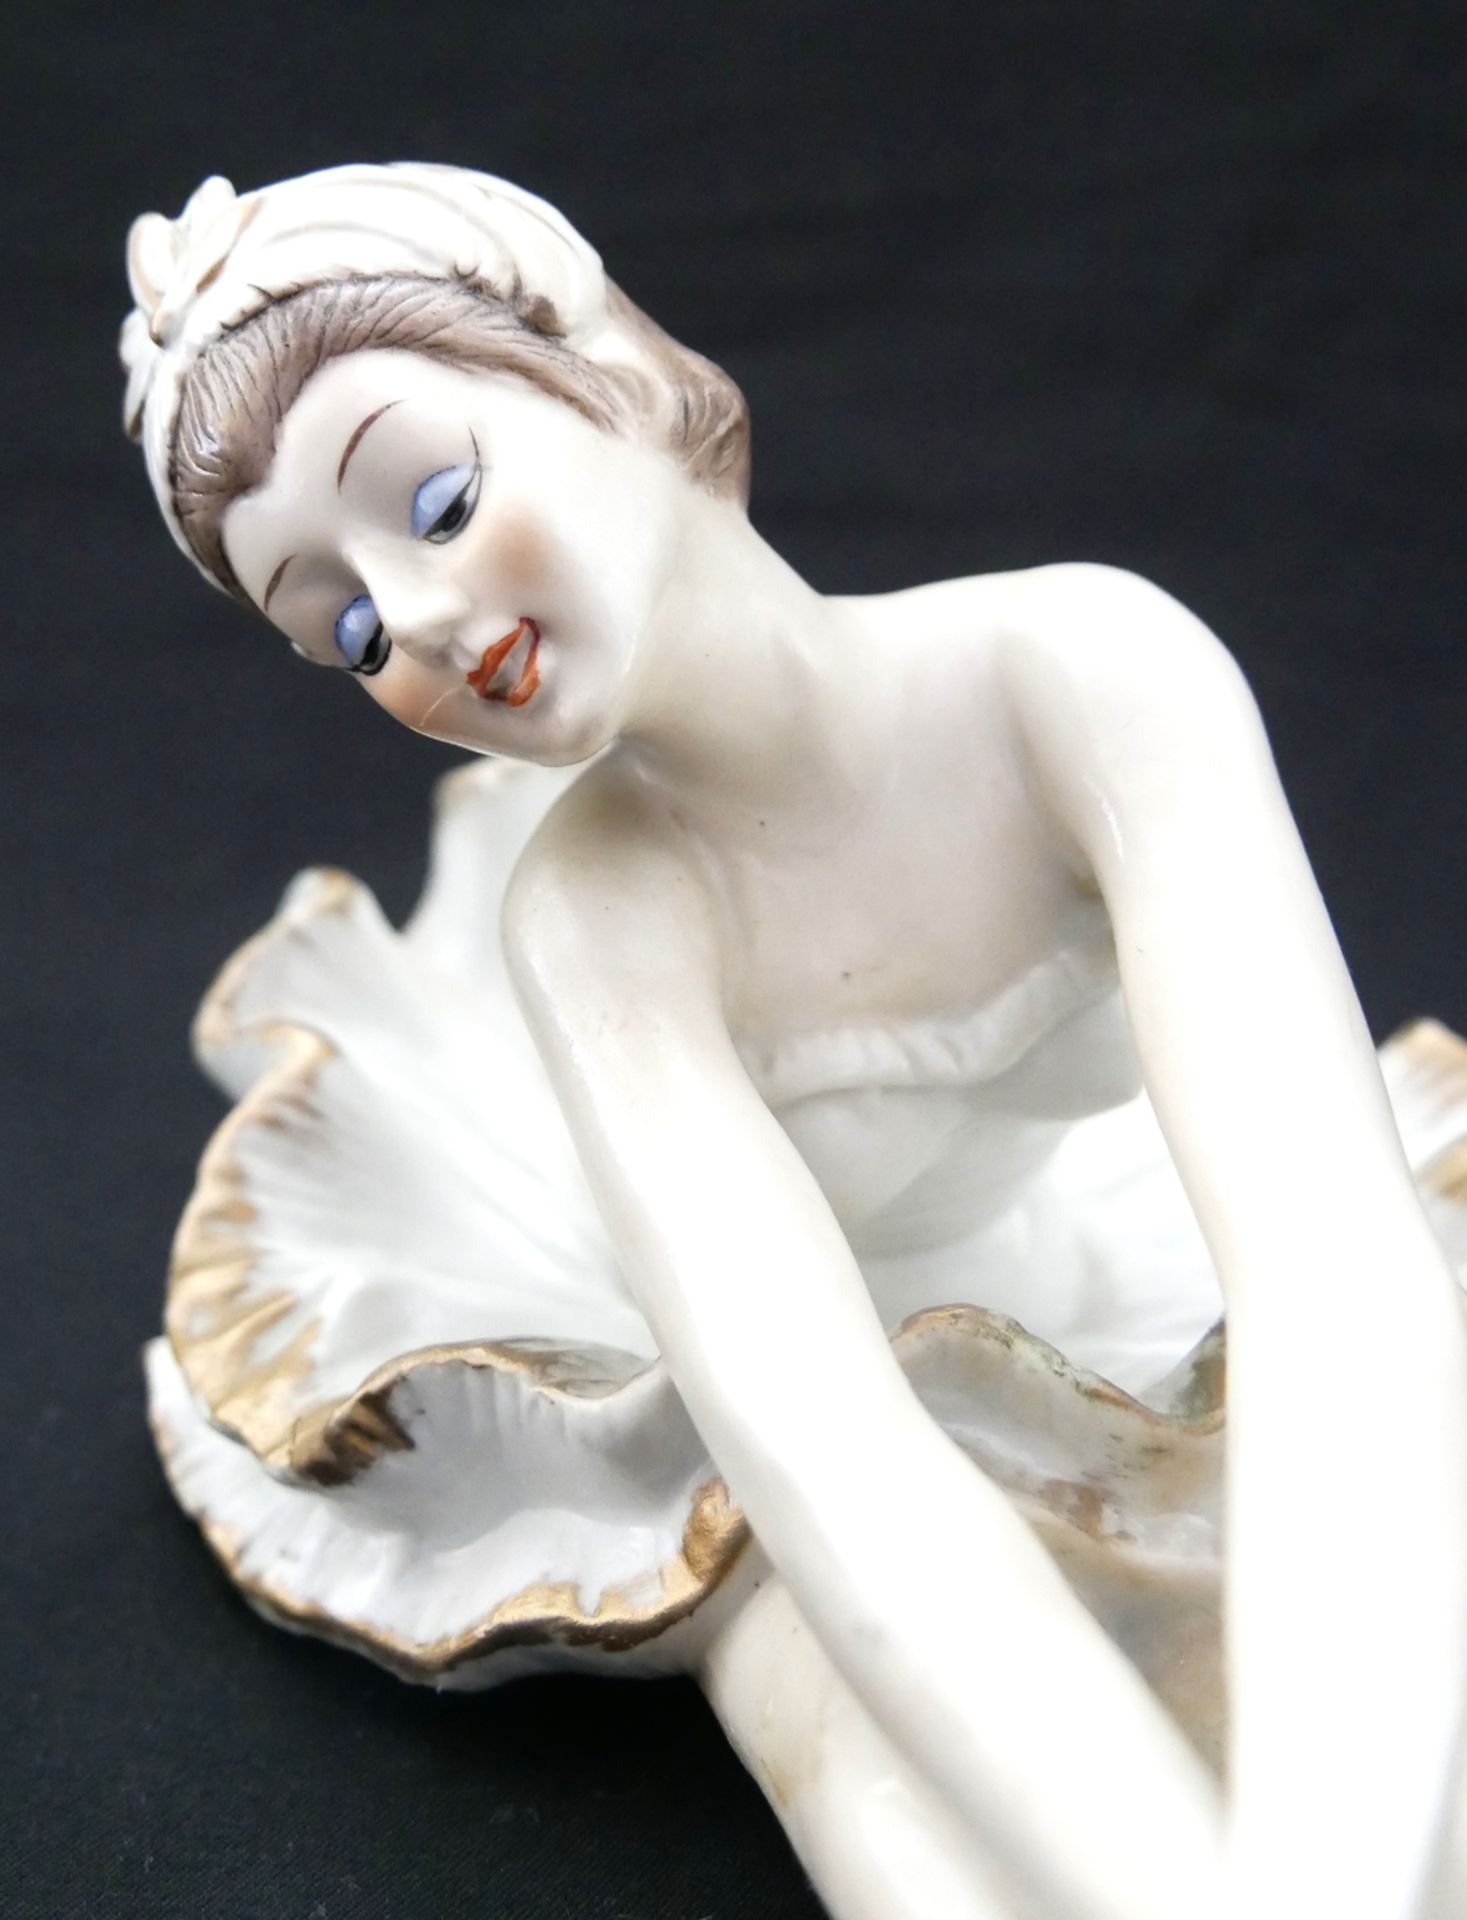 Keramikfigur "Ballerina", ungemarkt. Länge ca. 27 cm, Höhe ca. 13 cm - Bild 3 aus 3